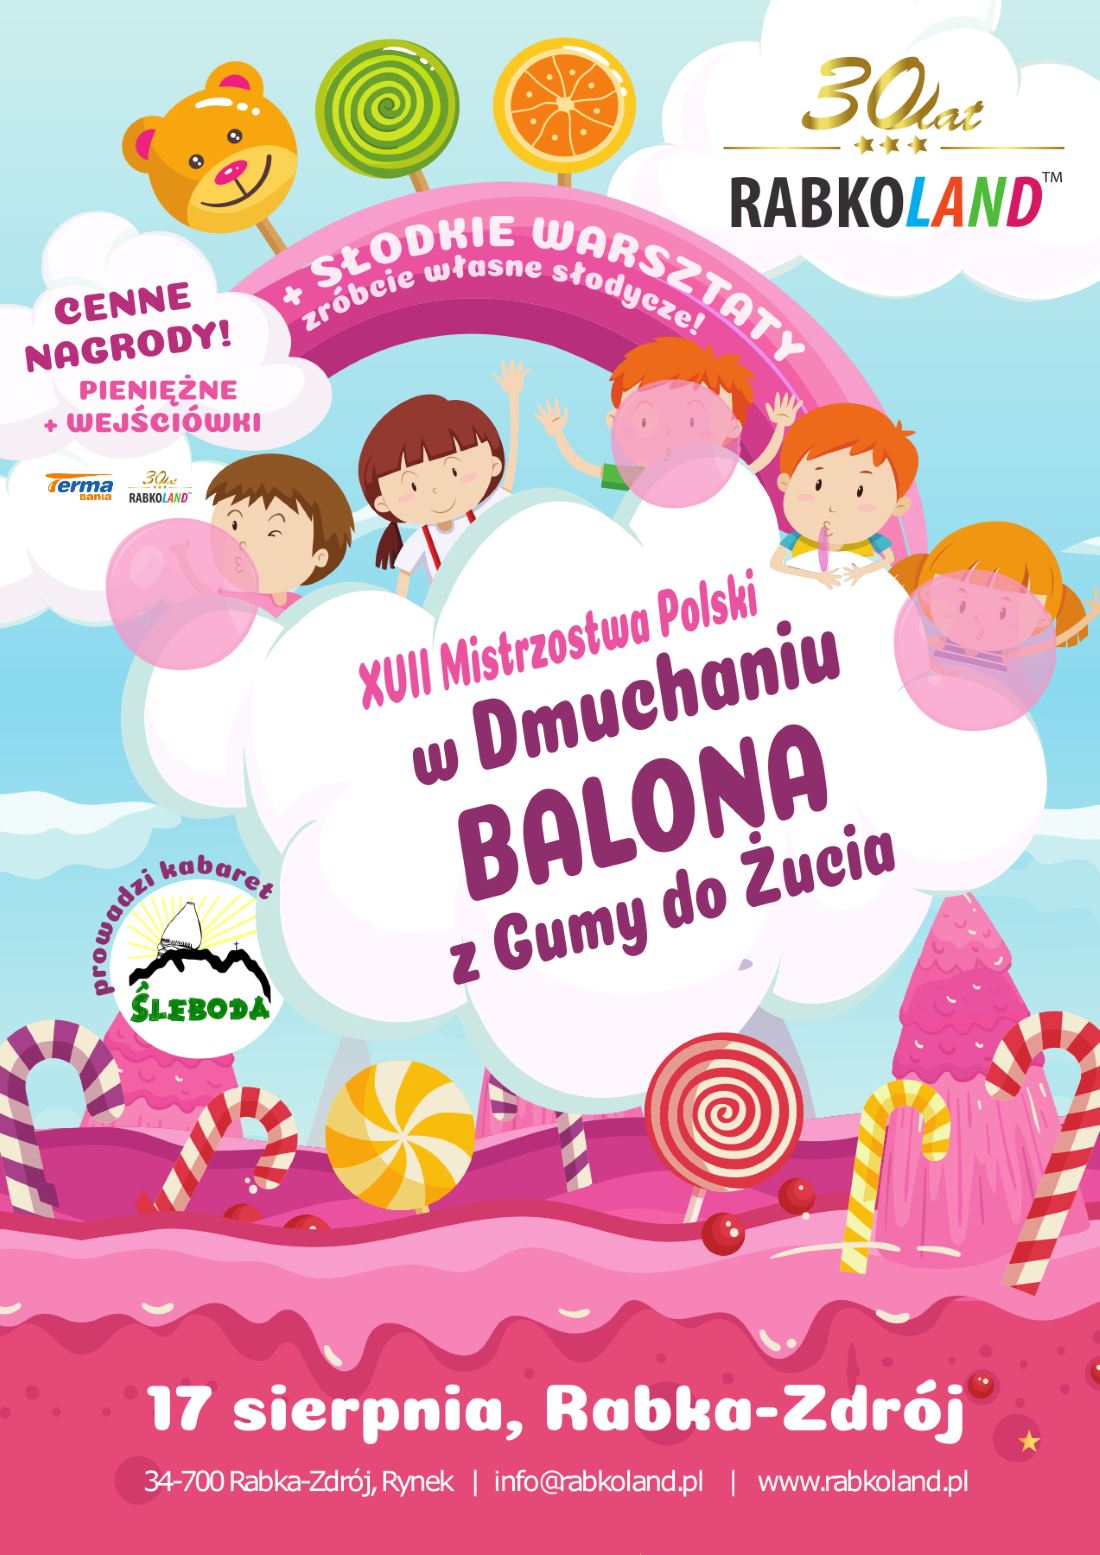 XVII Mistrzostwa Polski w Dmuchaniu Balona z Gumy do Żucia w Rabkolandzie